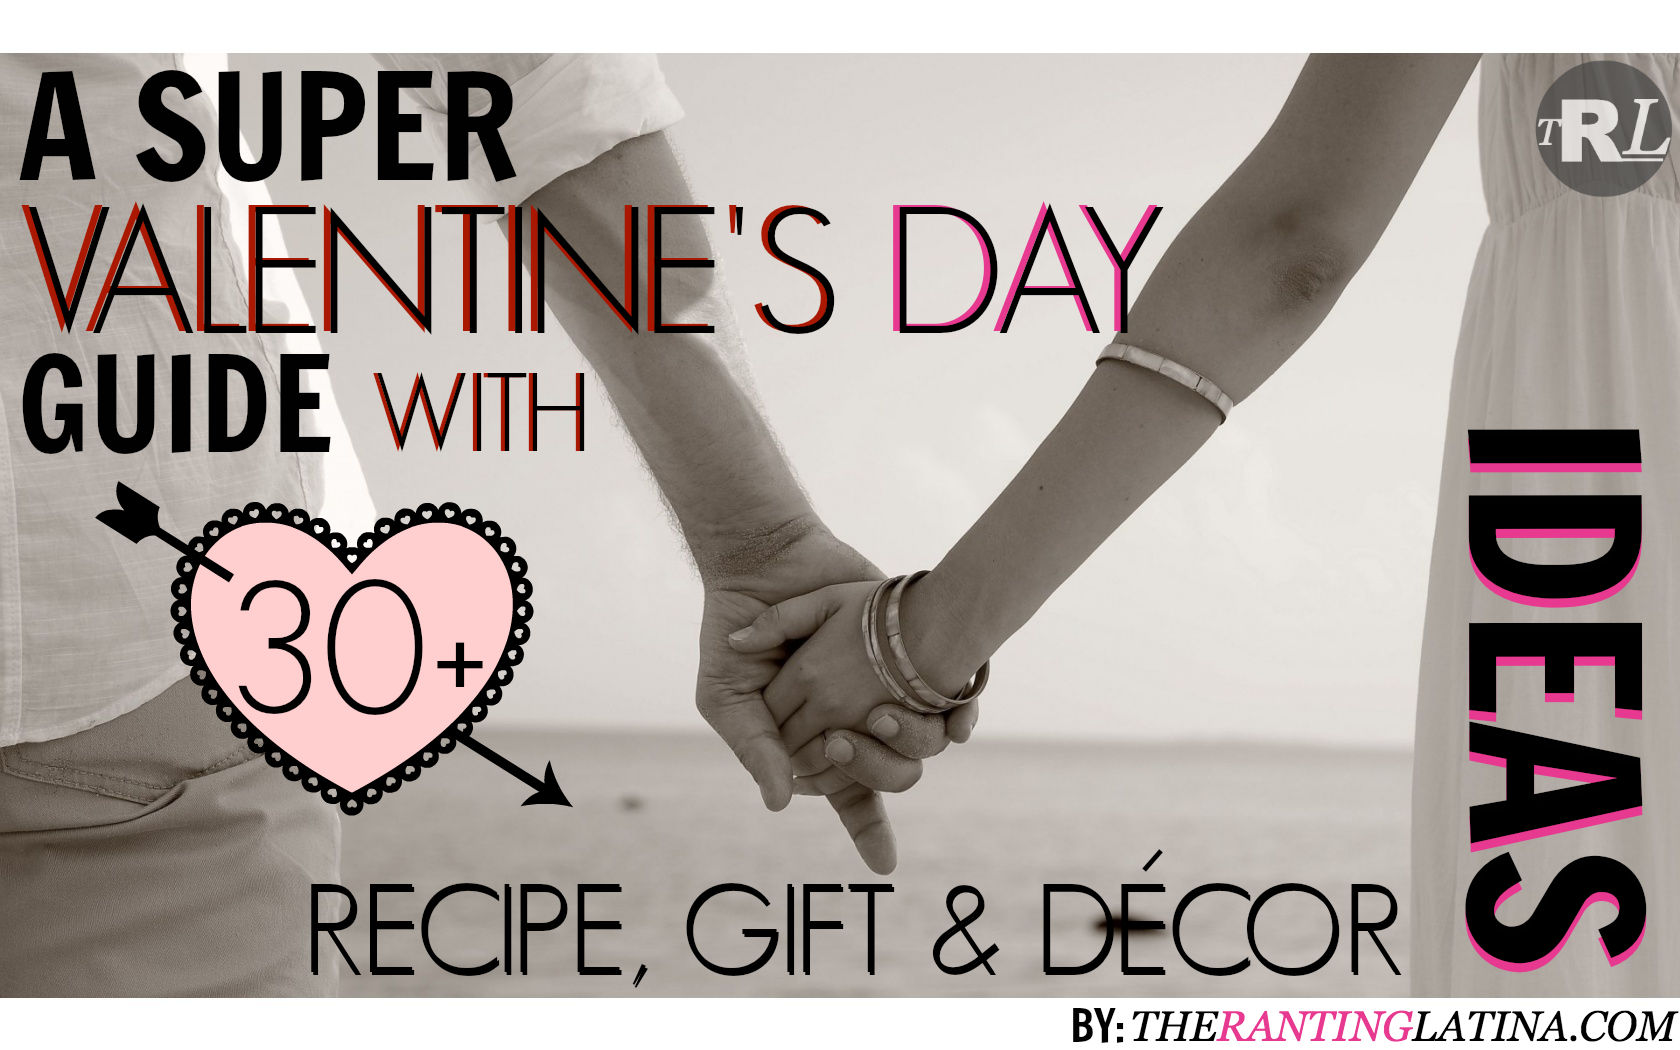 A Super Valentine’s Day Recipe, Gift & Décor Guide